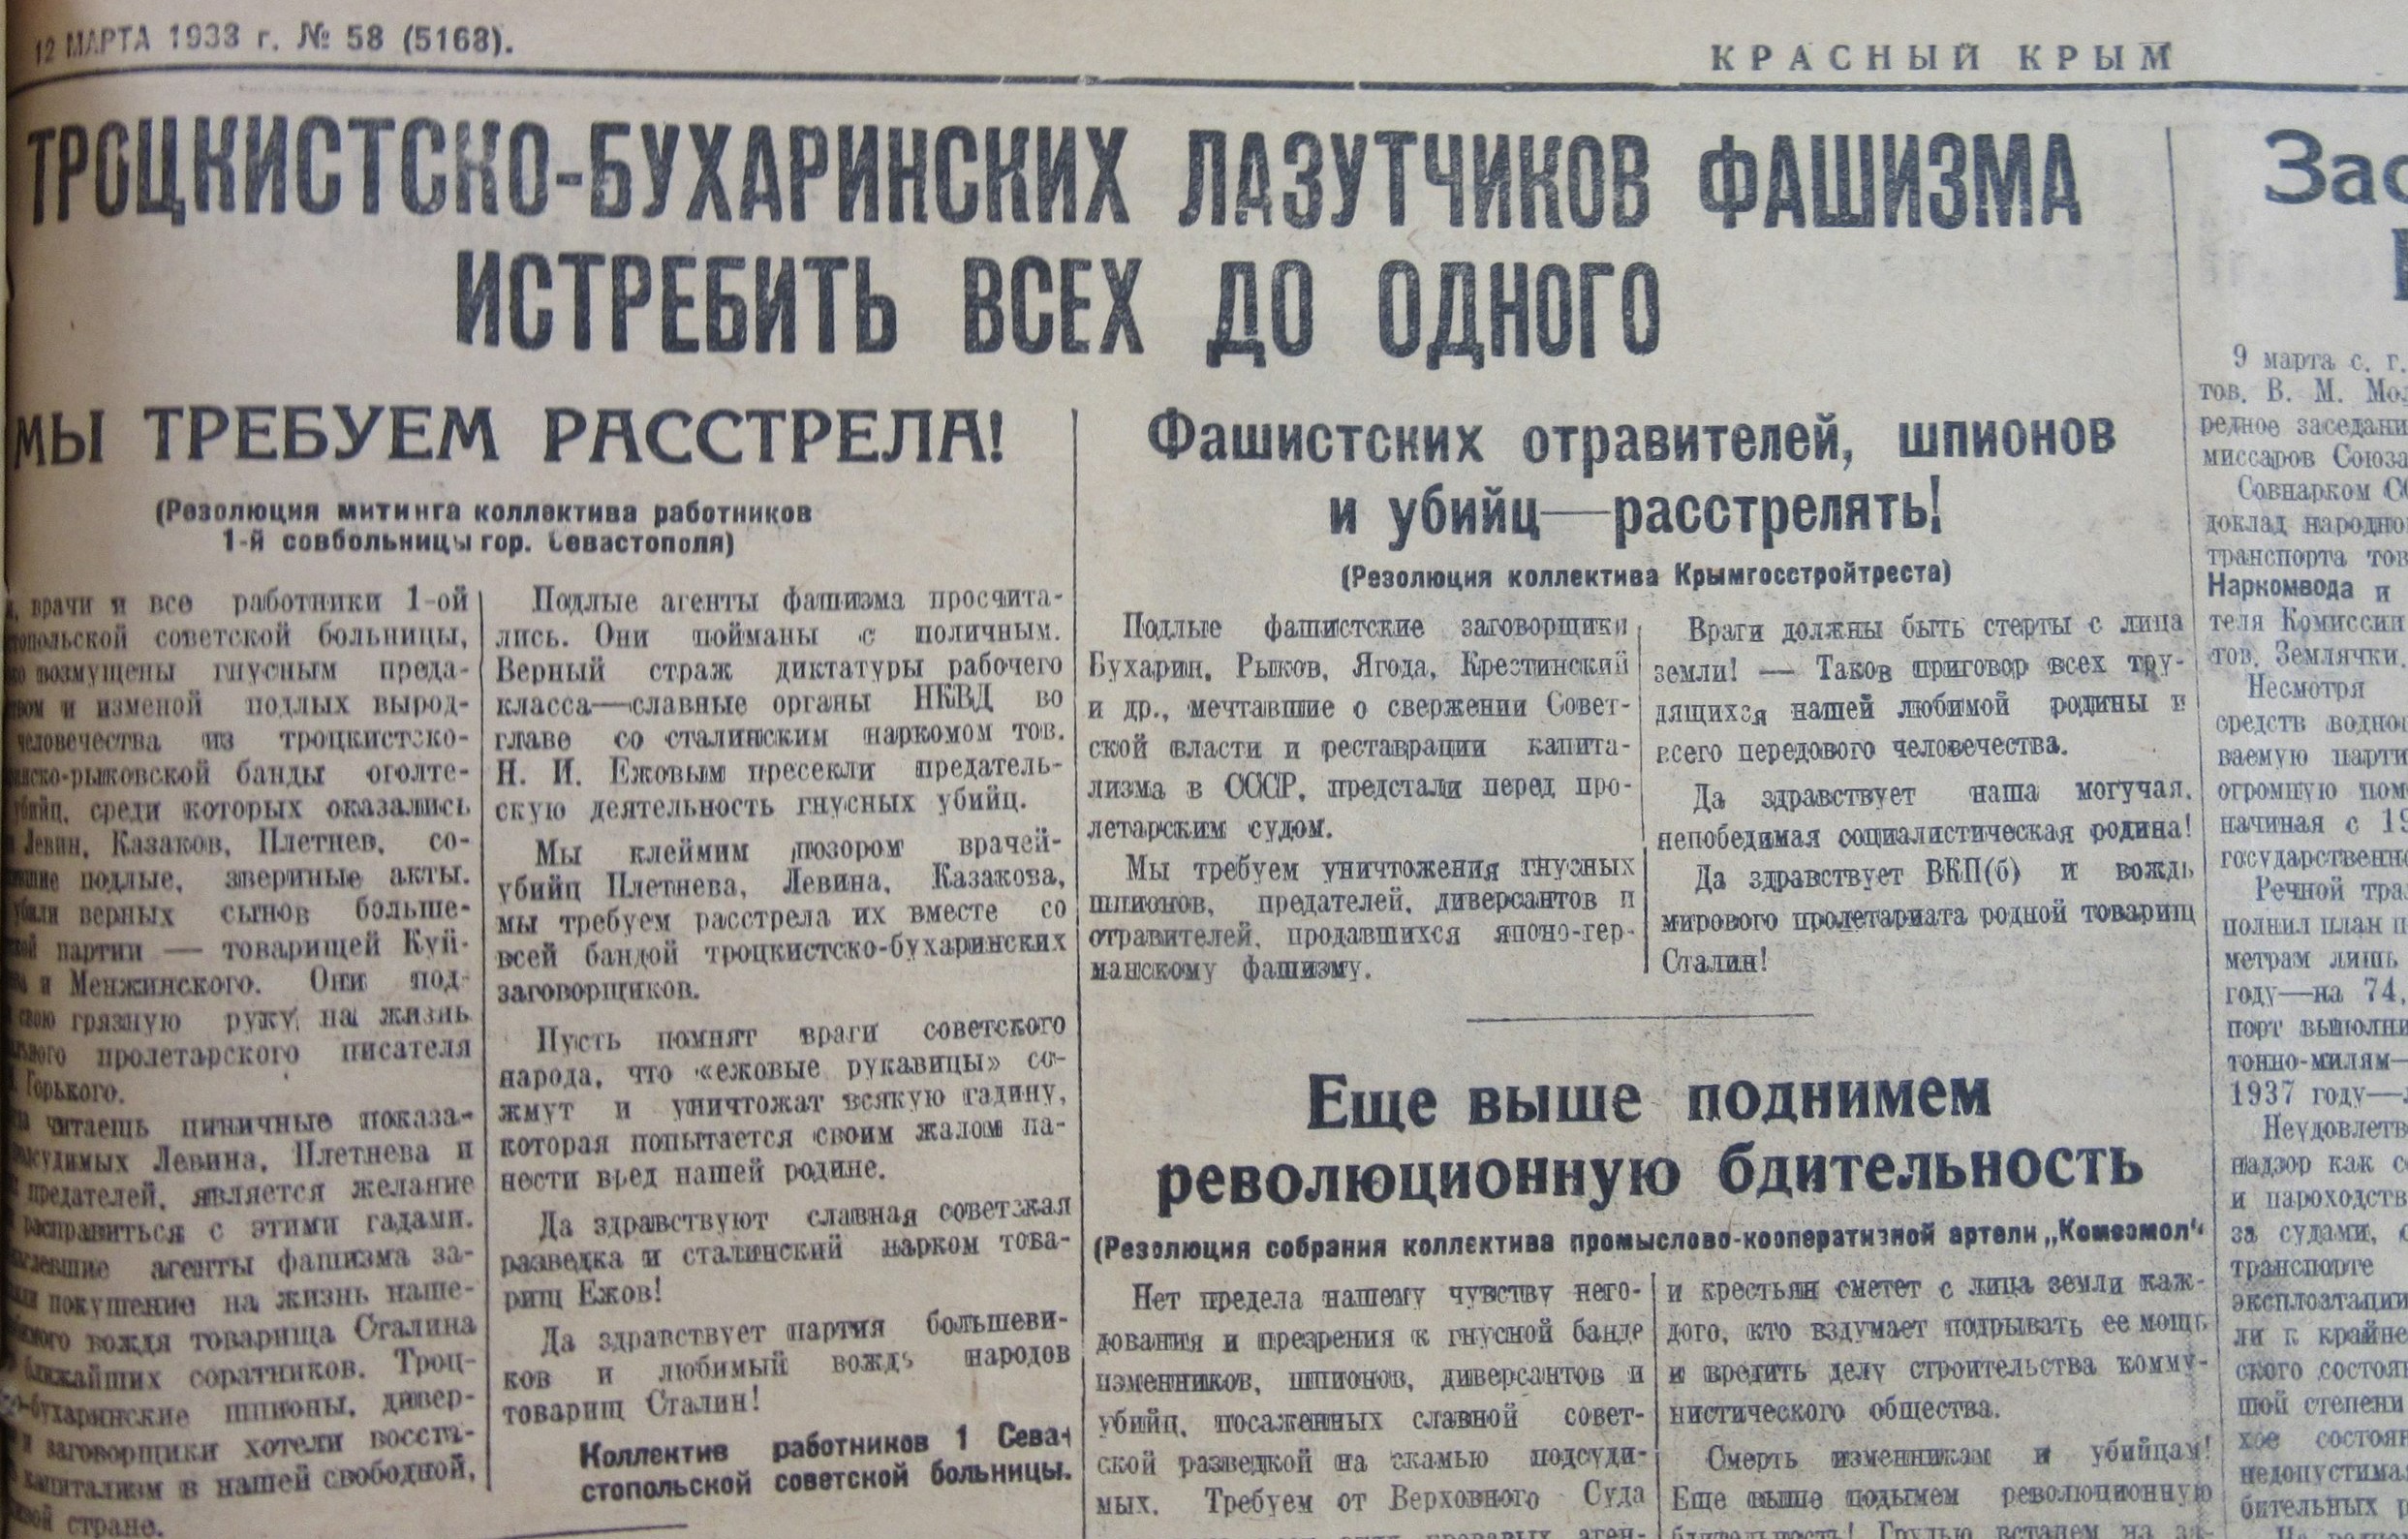 Резолюции рабочих коллективов в поддержку расстрела врагов народа, 1938 год